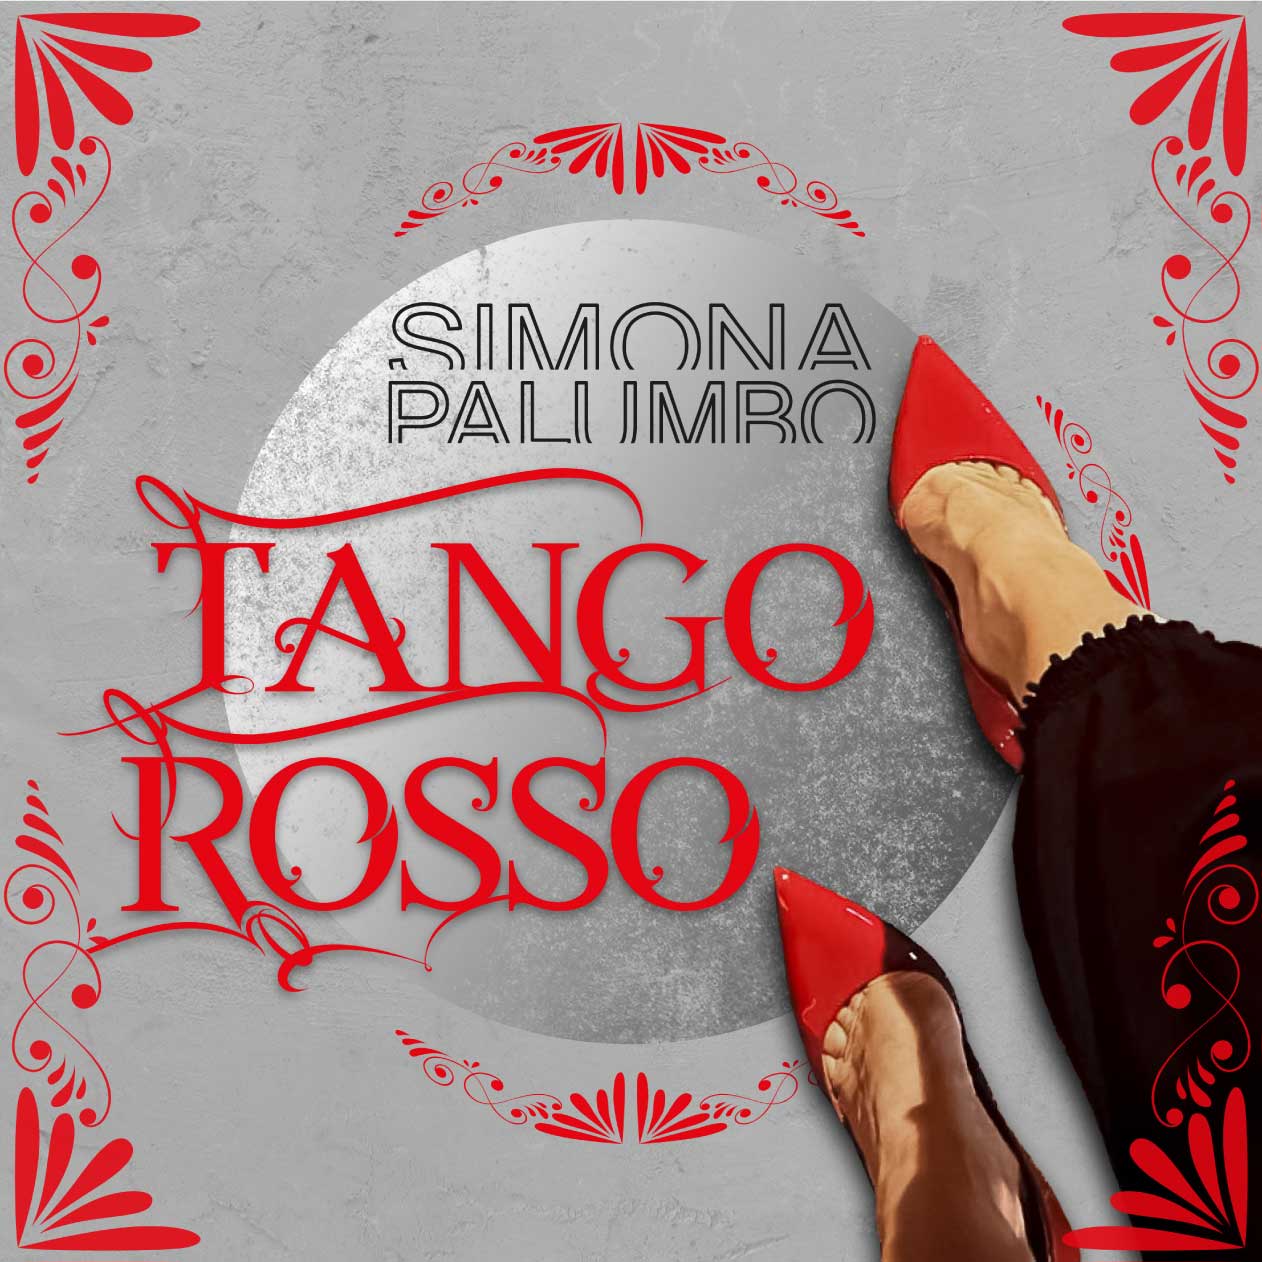 Tango Rosso Simona Palumbo